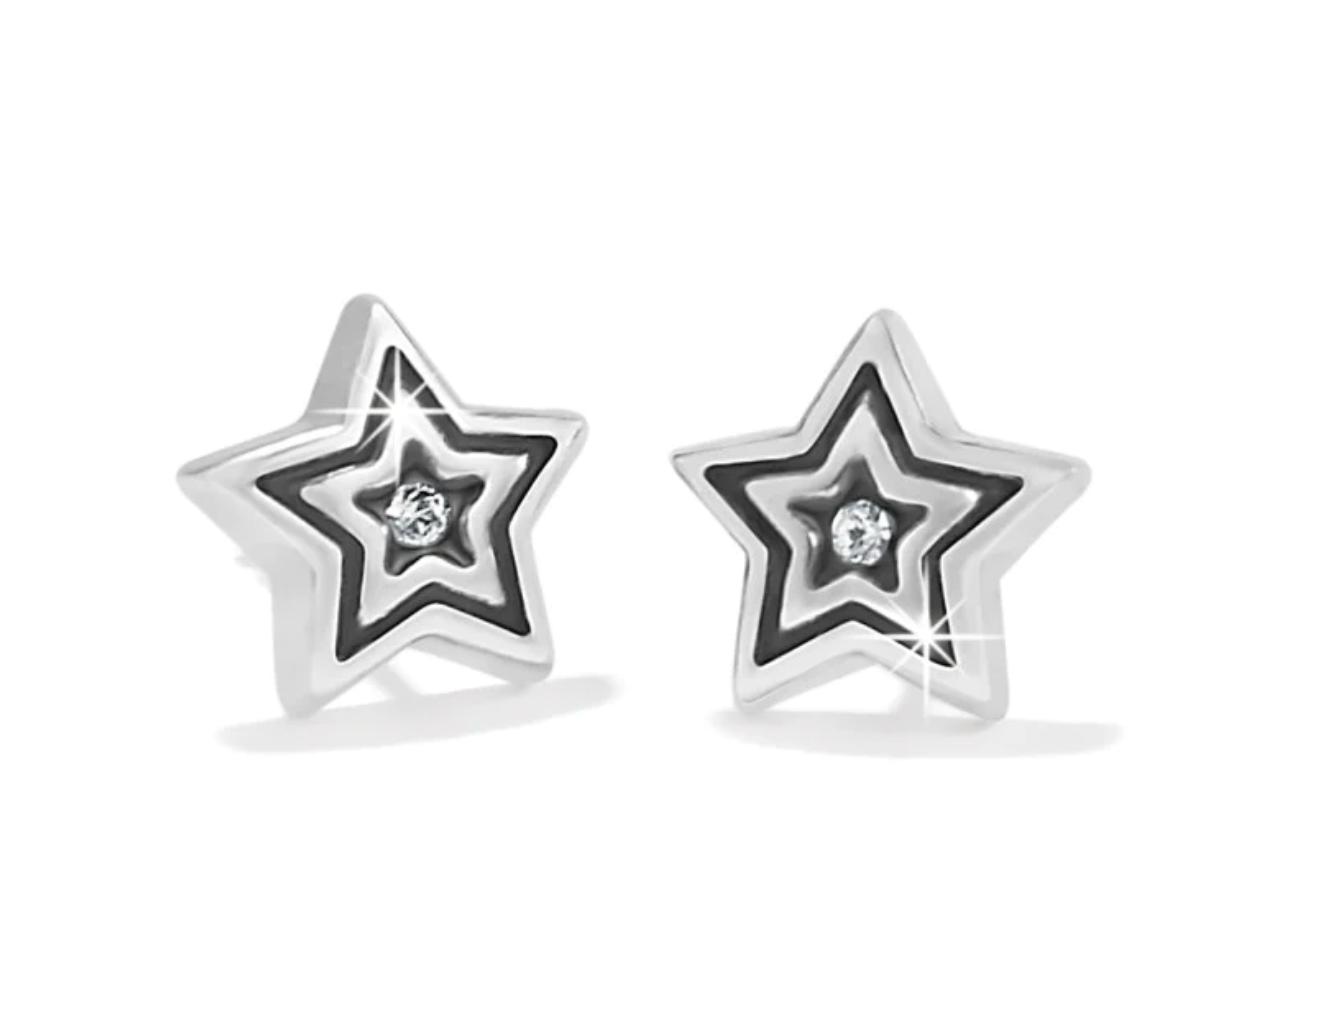 Star Rocks Mini Post Earrings